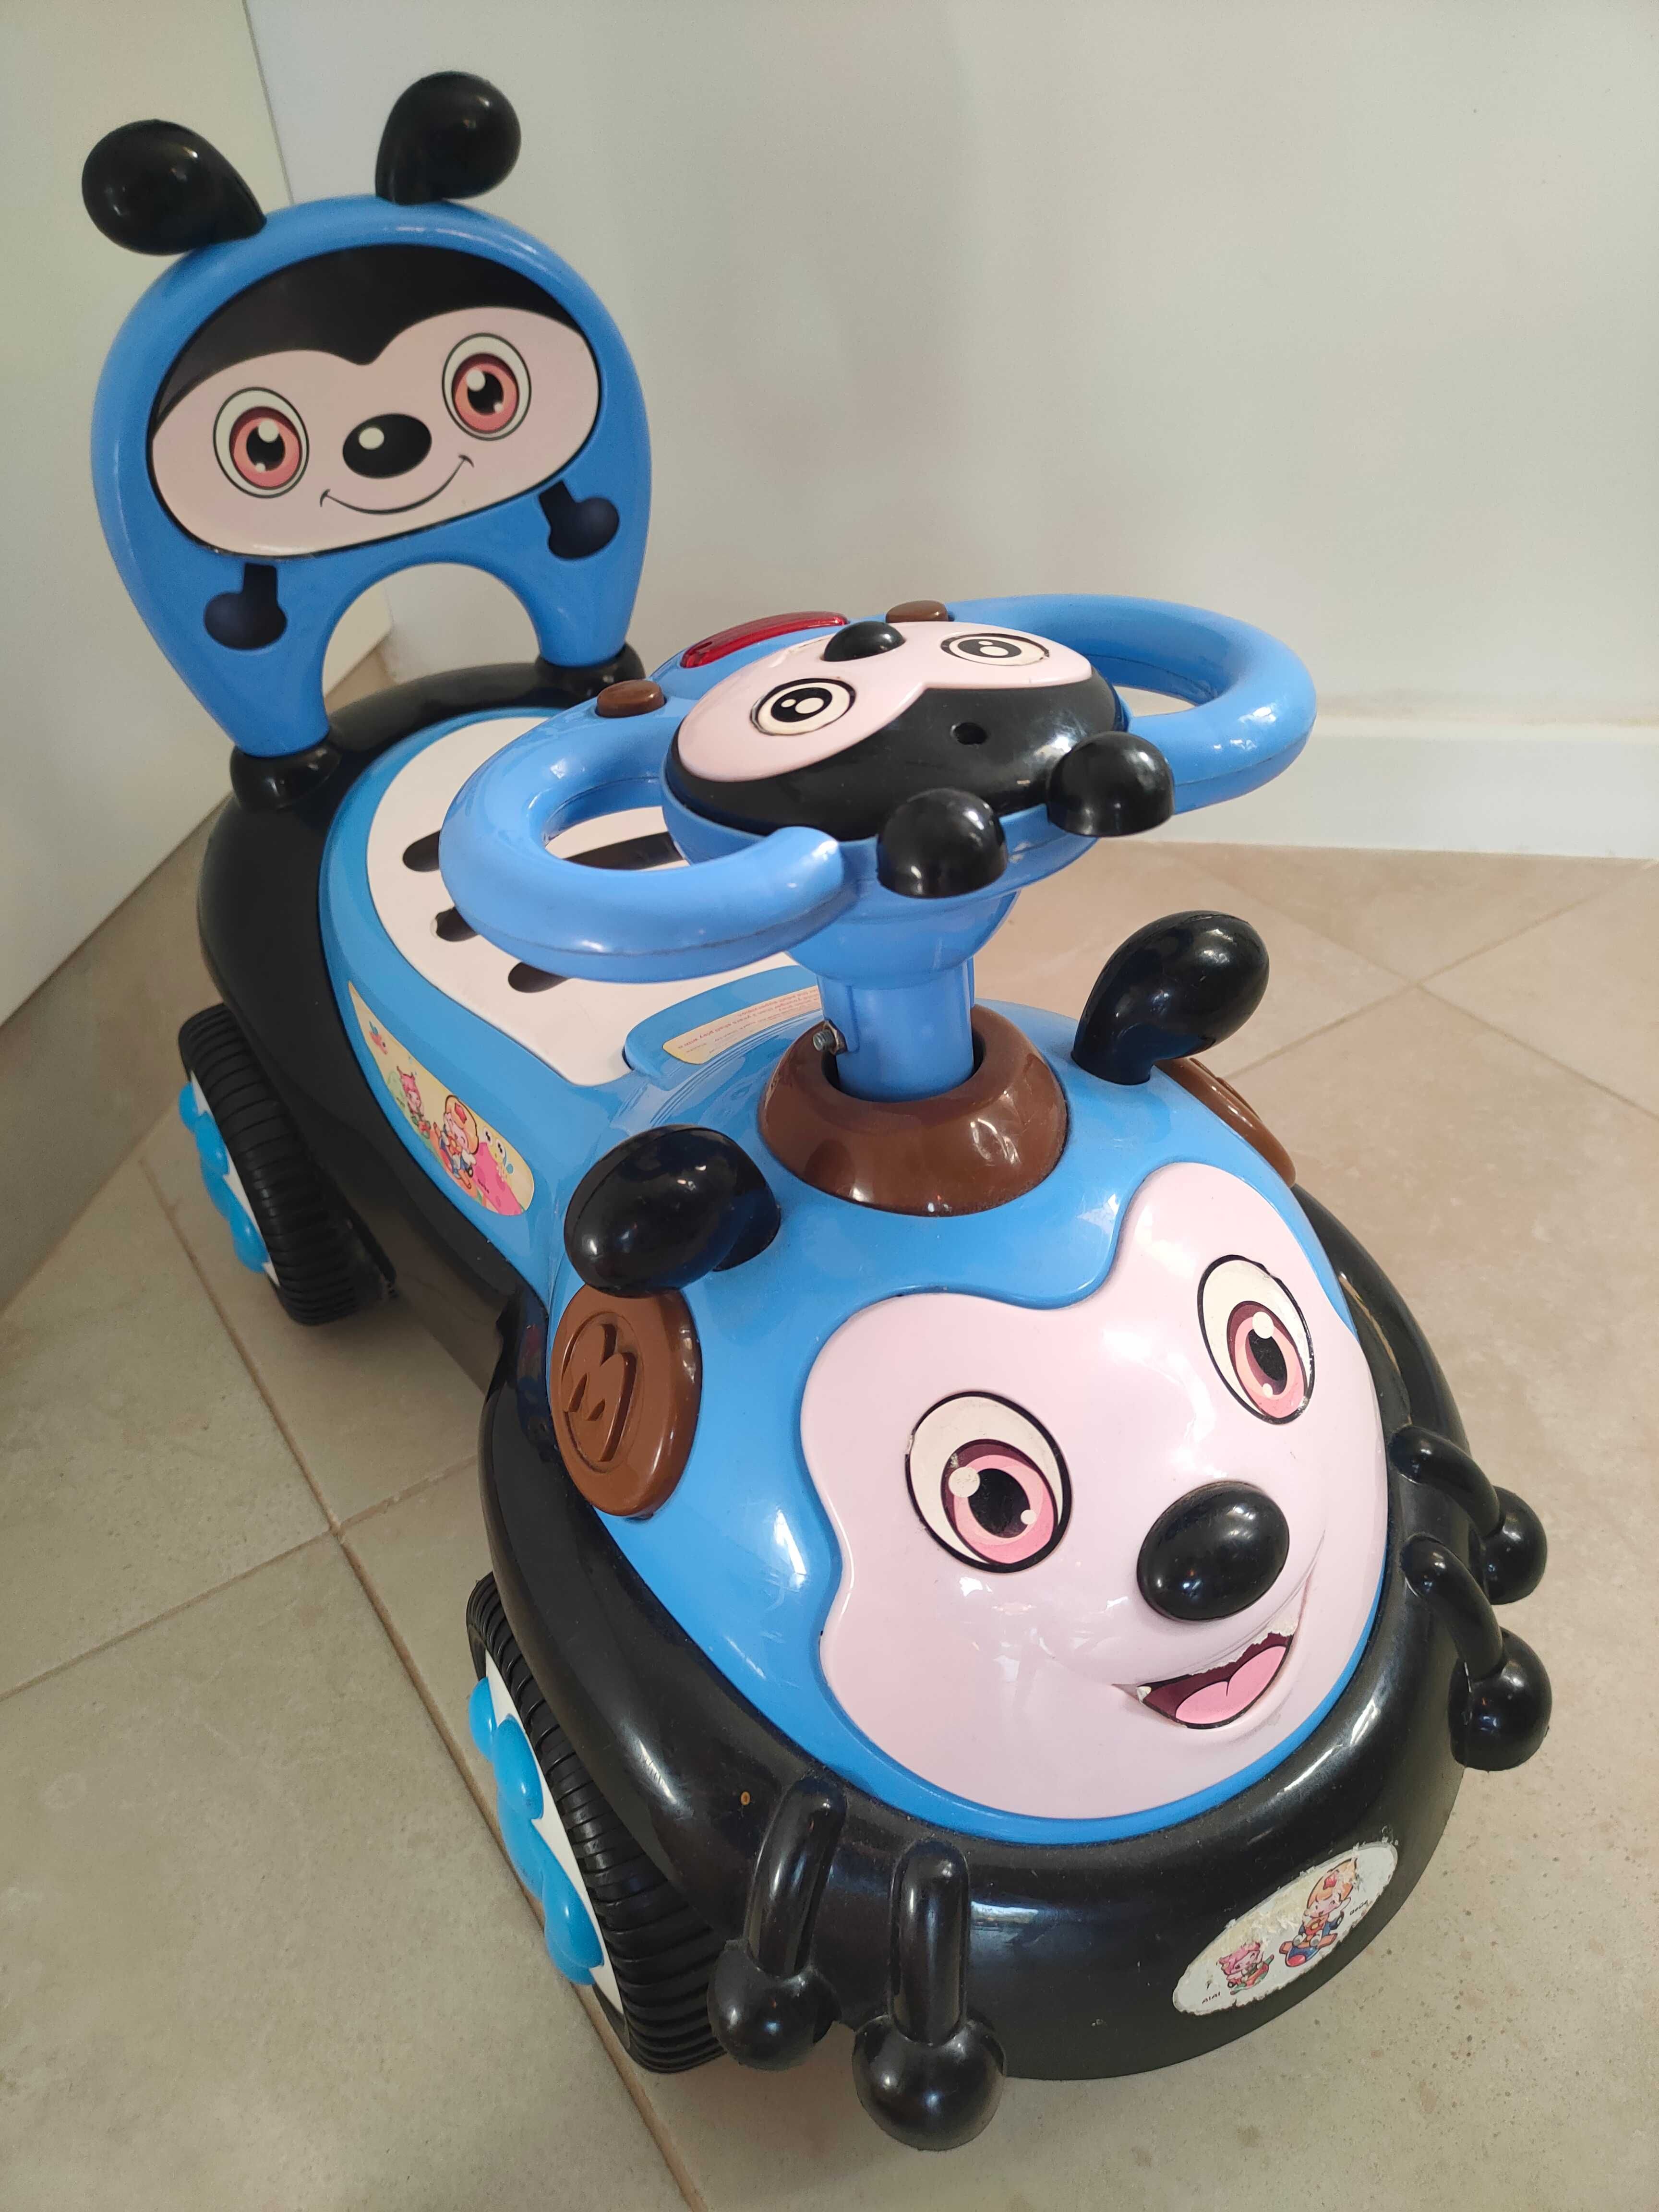 Samochodzik dla dziecka